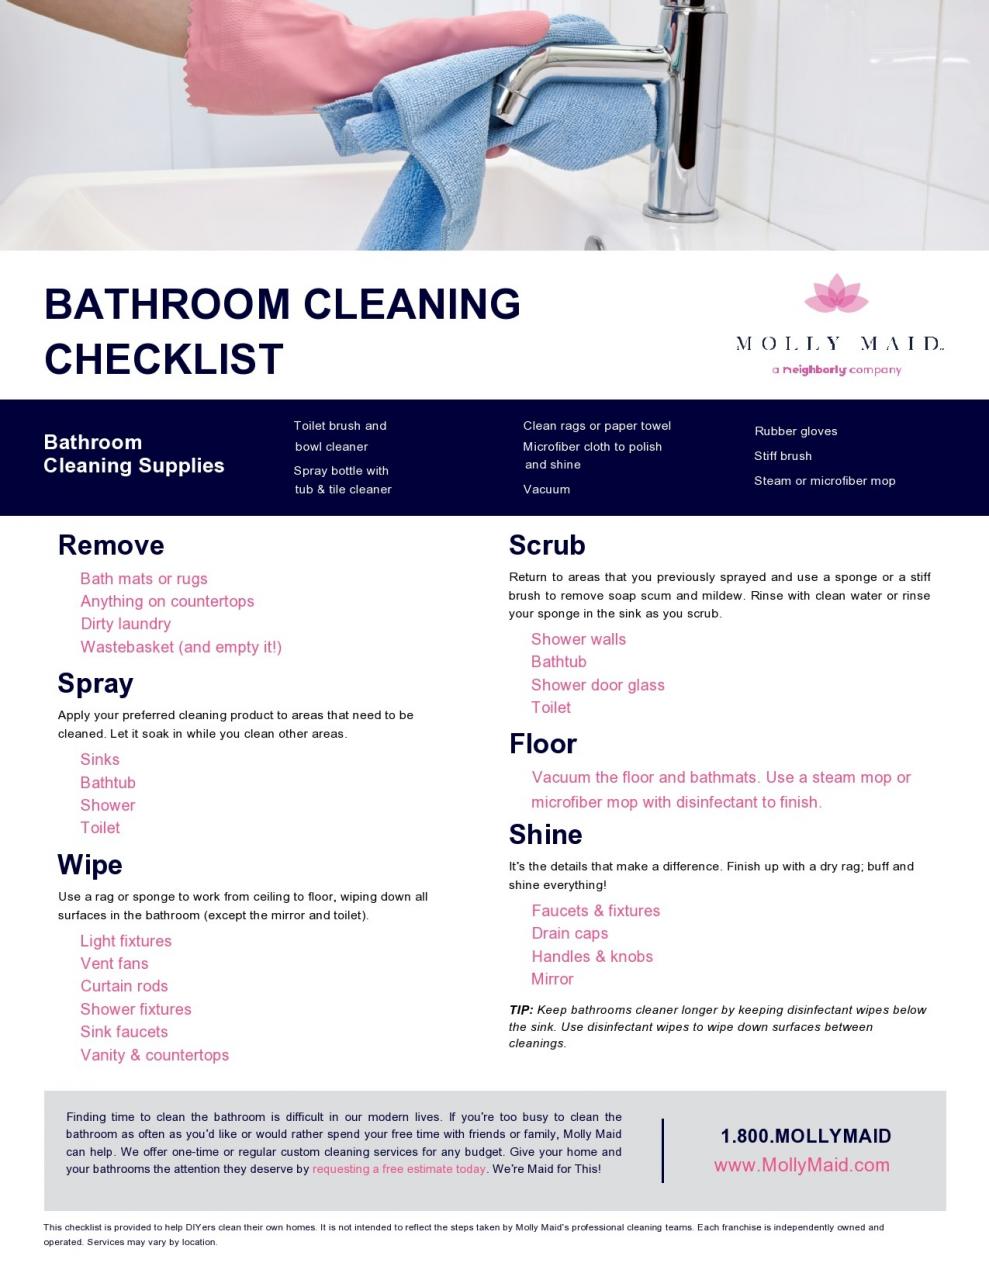 Lista de verificación de limpieza de baño gratis 05